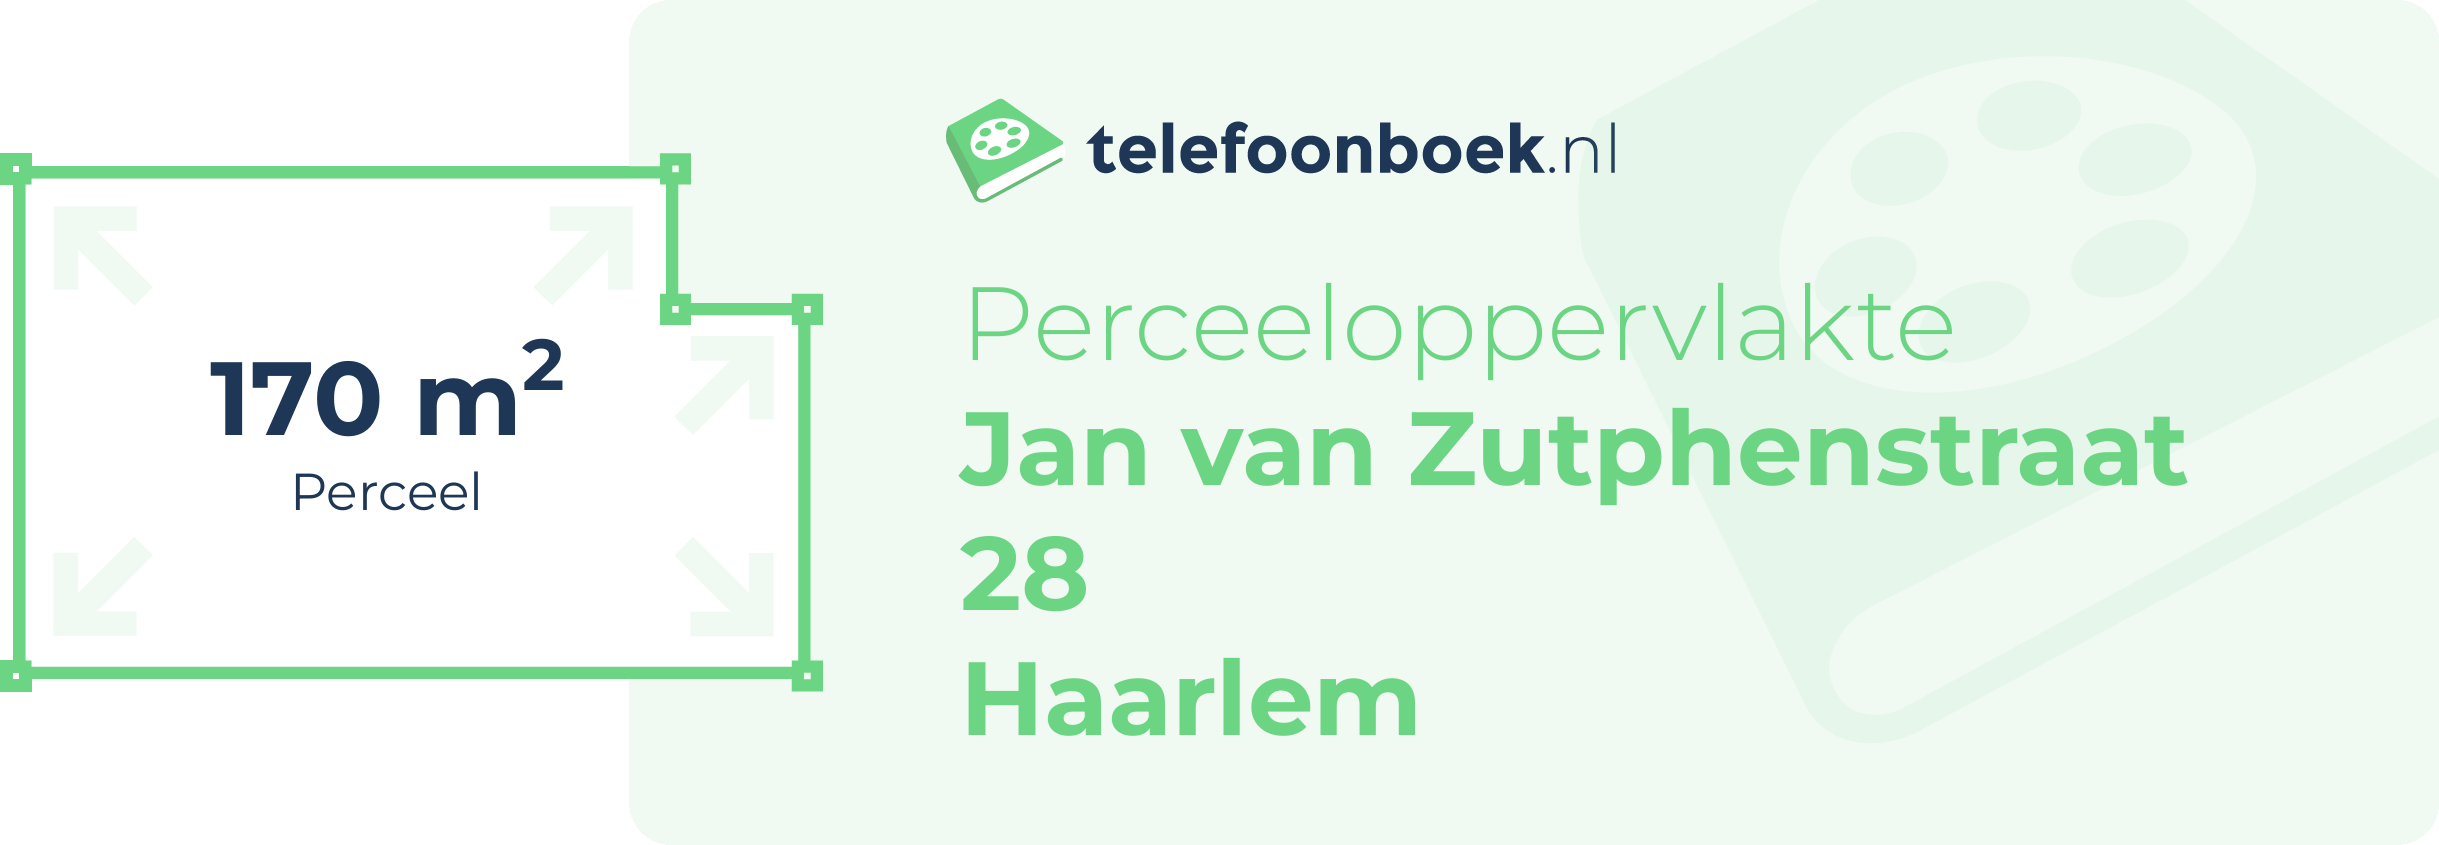 Perceeloppervlakte Jan Van Zutphenstraat 28 Haarlem